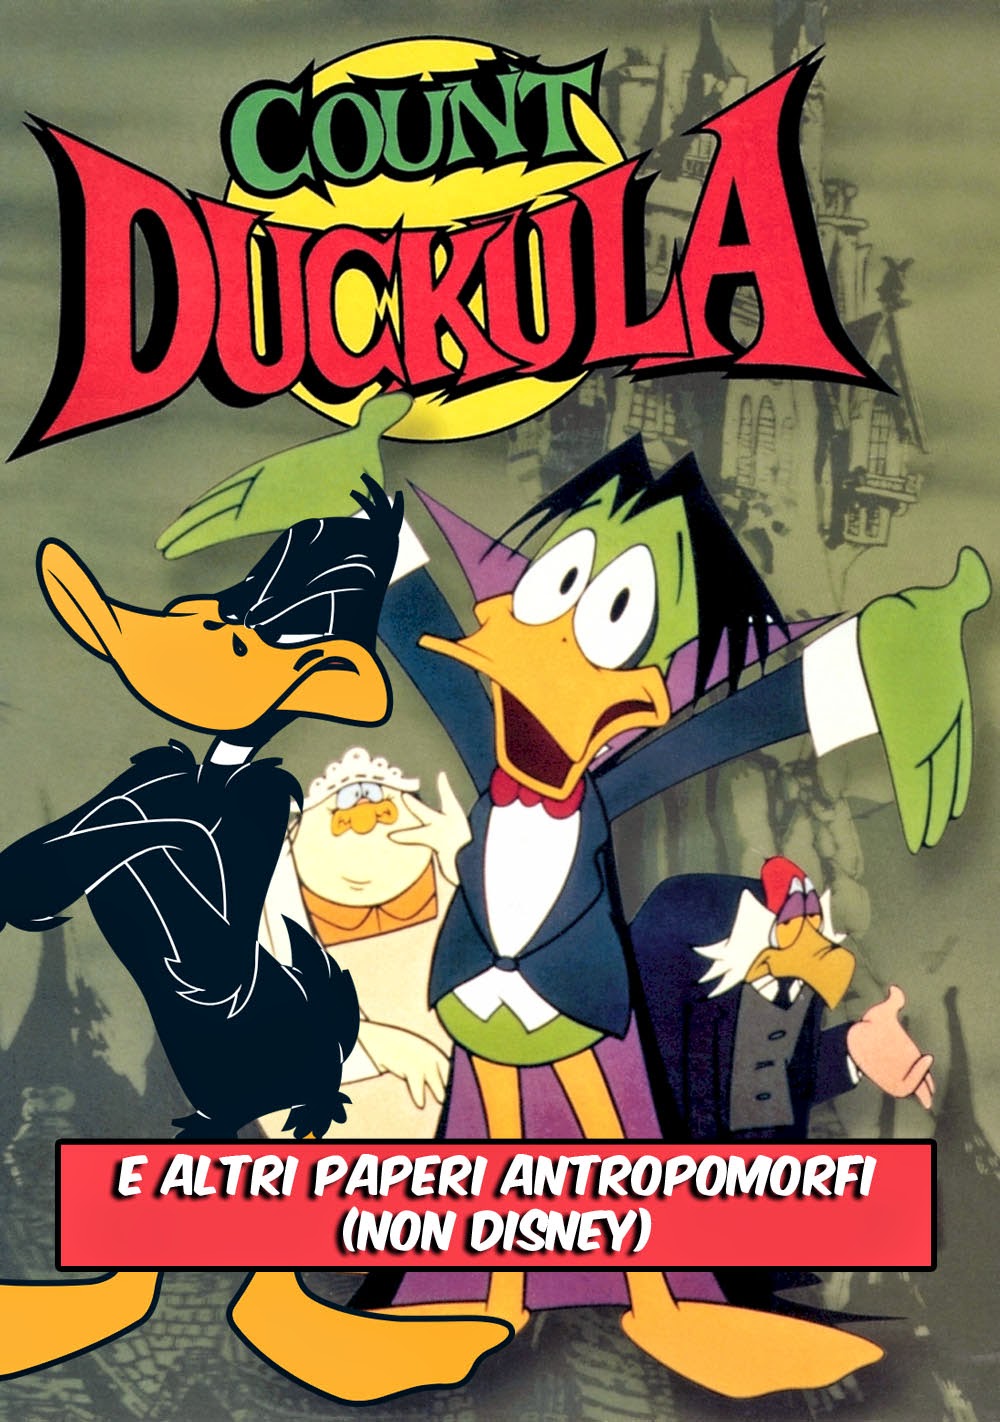 Conte Dacula Daffy Duck paperi antropomorfi non Disney